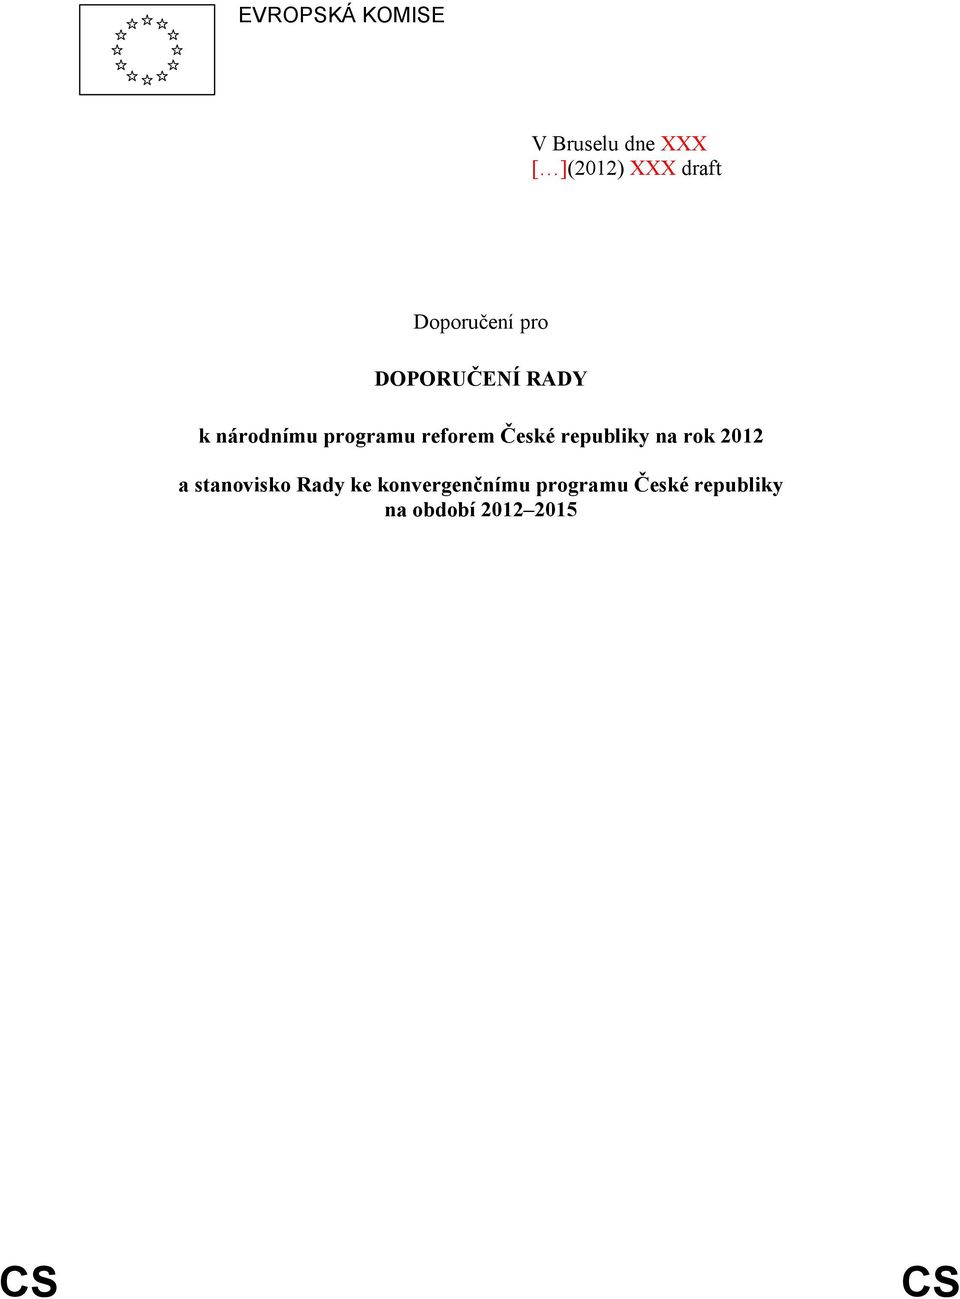 reforem České republiky na rok 2012 a stanovisko Rady ke